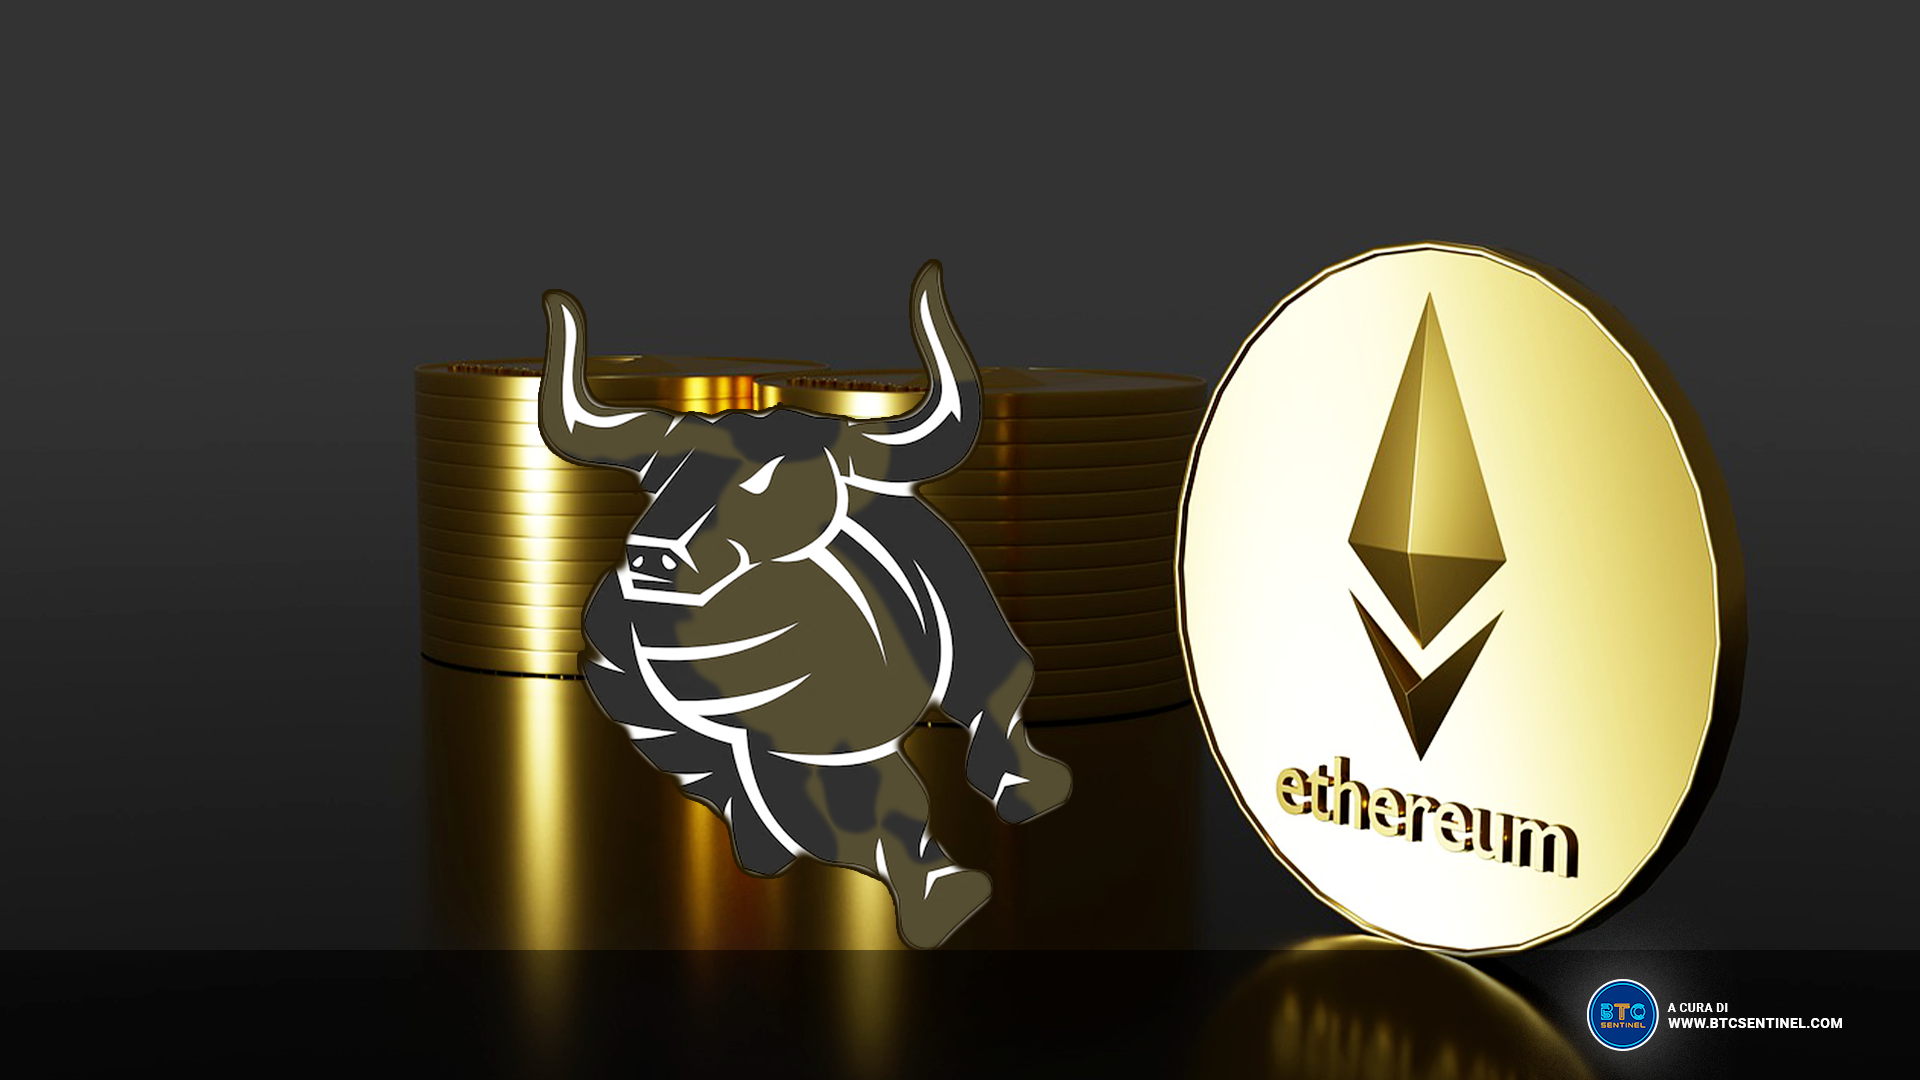 Ethereum potrebbe iniziare presto una delle più forti bullrun del mercato crypto